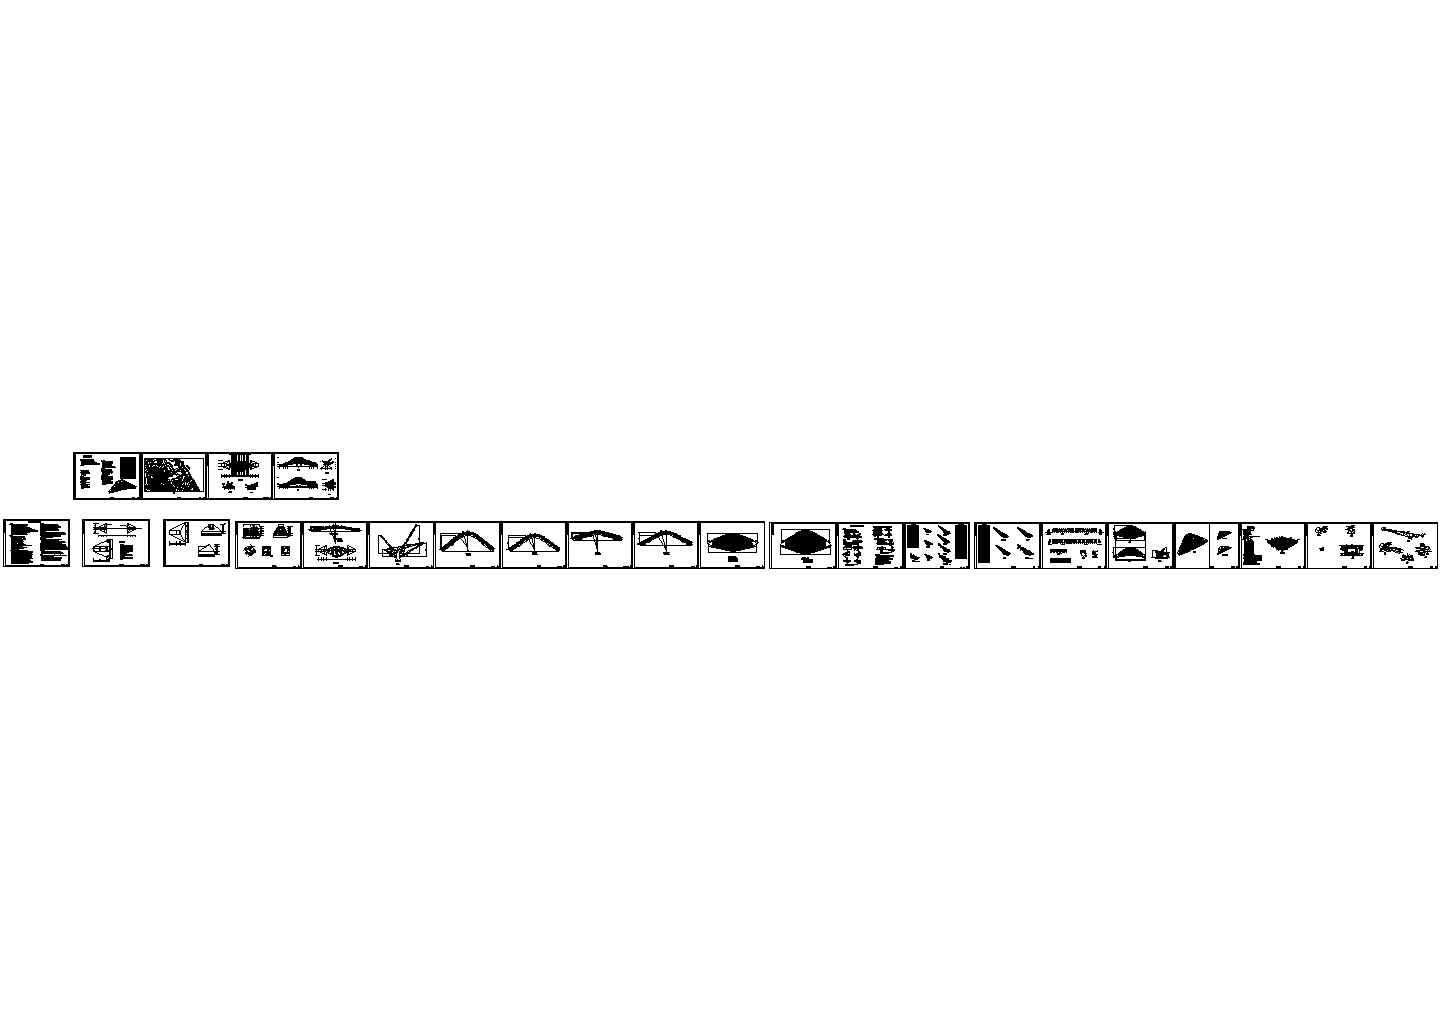 物流园大门双钢拱-索膜组合结构施工图纸(cad)